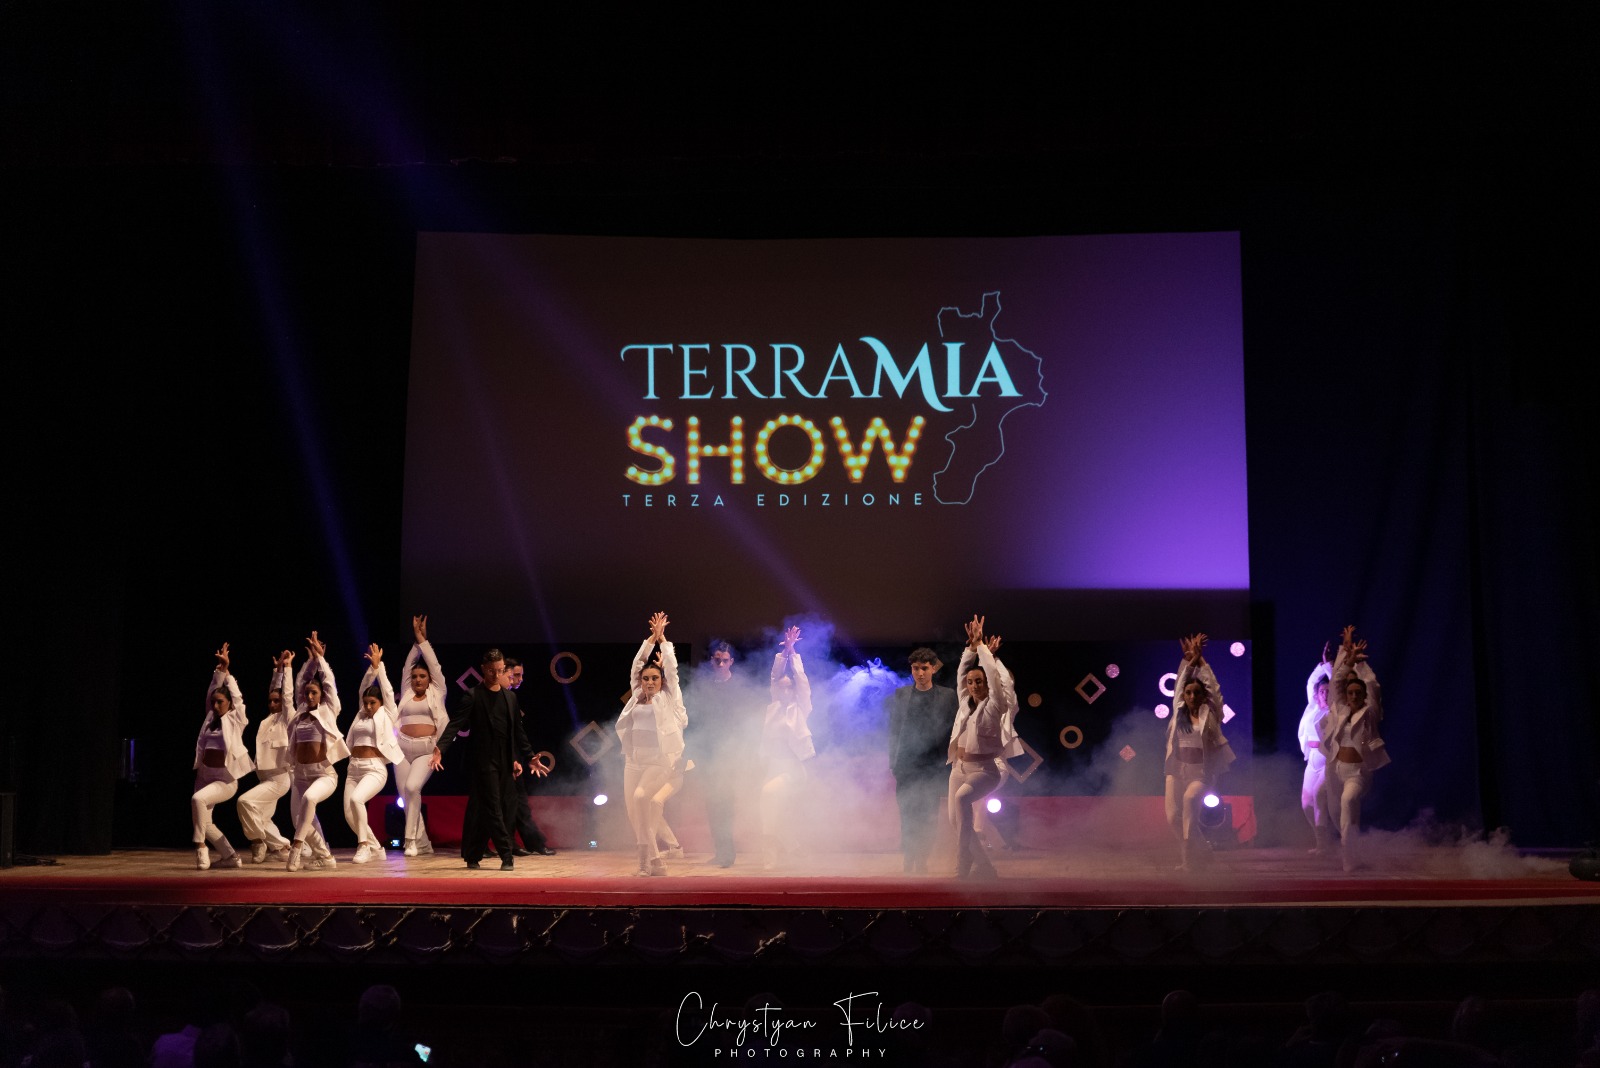 Terra Mia Show